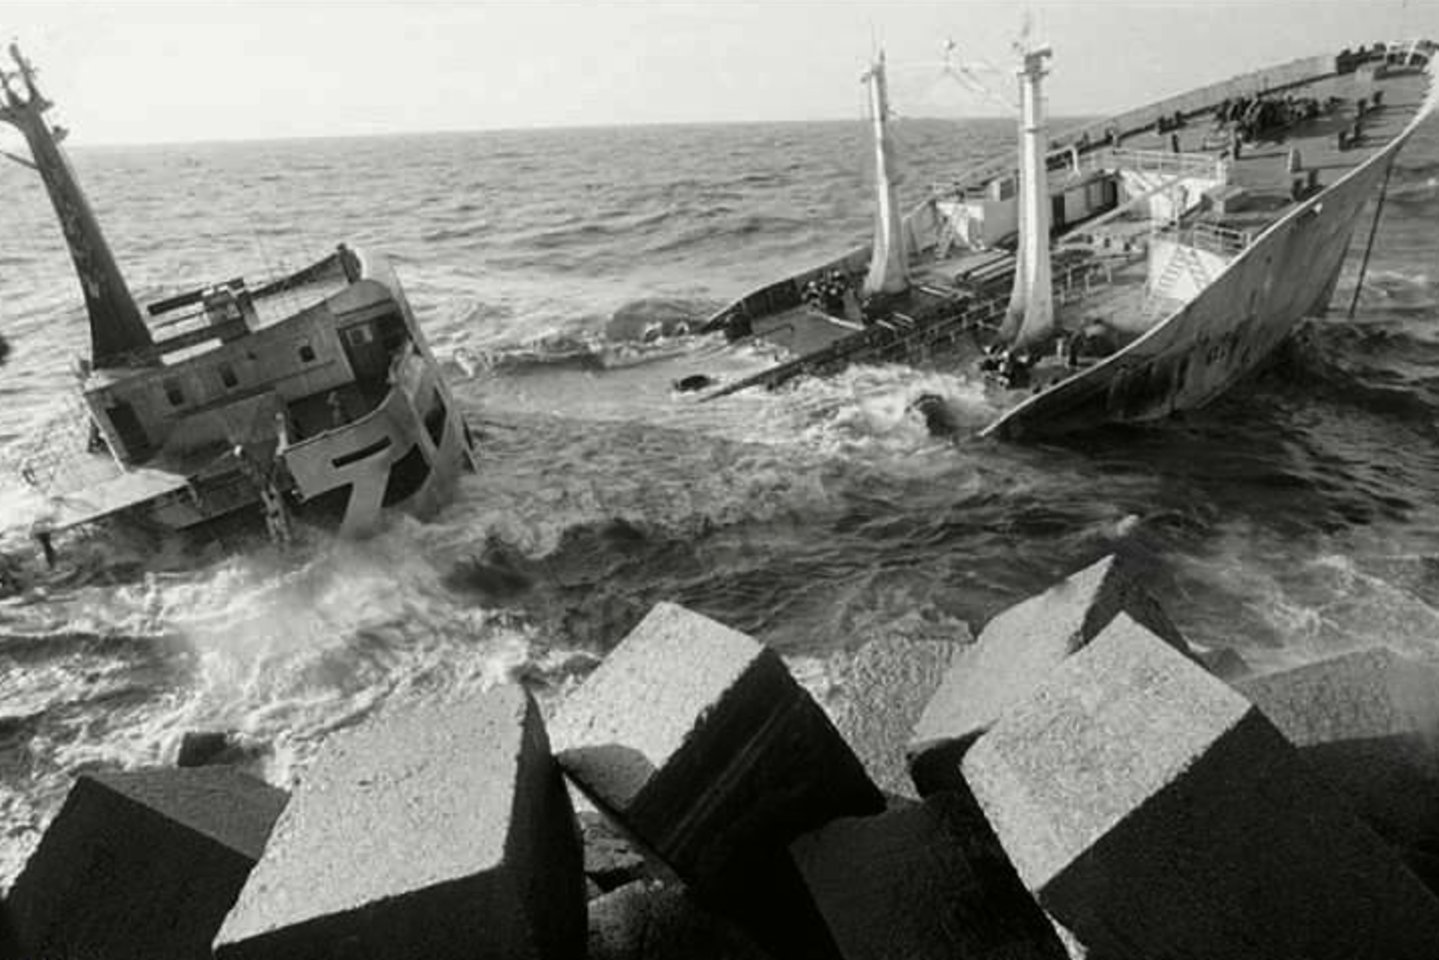 1981 m. įvyko viena didžiausių ekologinių katastrofų Lietuvos pajūryje. Per audrą su Gibraltaro vėliava plaukiojantis tanklaivis „Globe Assimi“ sudužo prie Klaipėdos uosto šiaurinio molo. Išsiliejus apie 17 tūkst. tonų mazuto buvo pažeista ekosistema.<br>marinetraffic.com